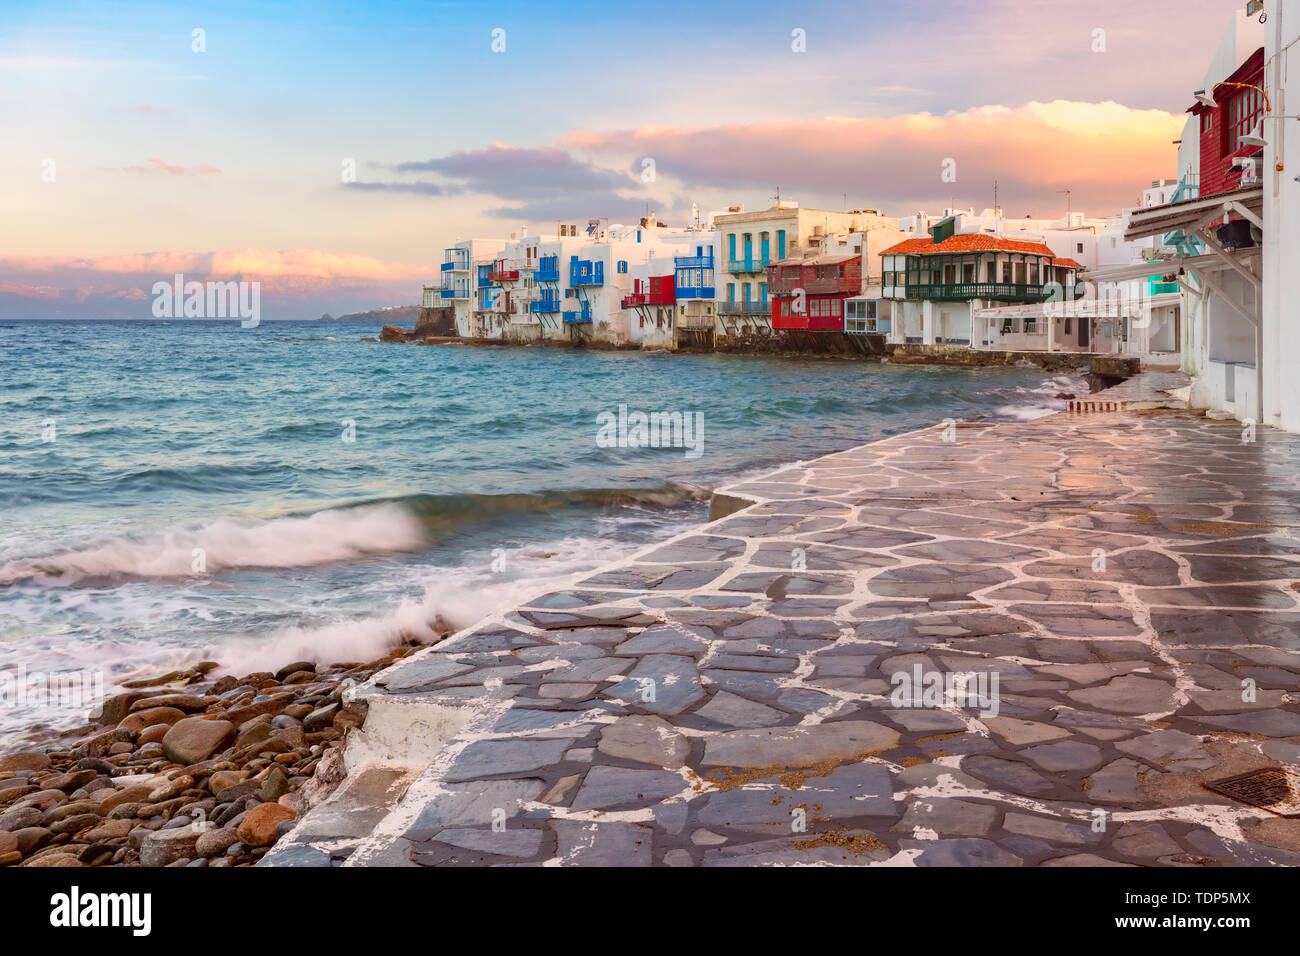 La petite Venise sur l'île de Mykonos, Grèce Banque D'Images